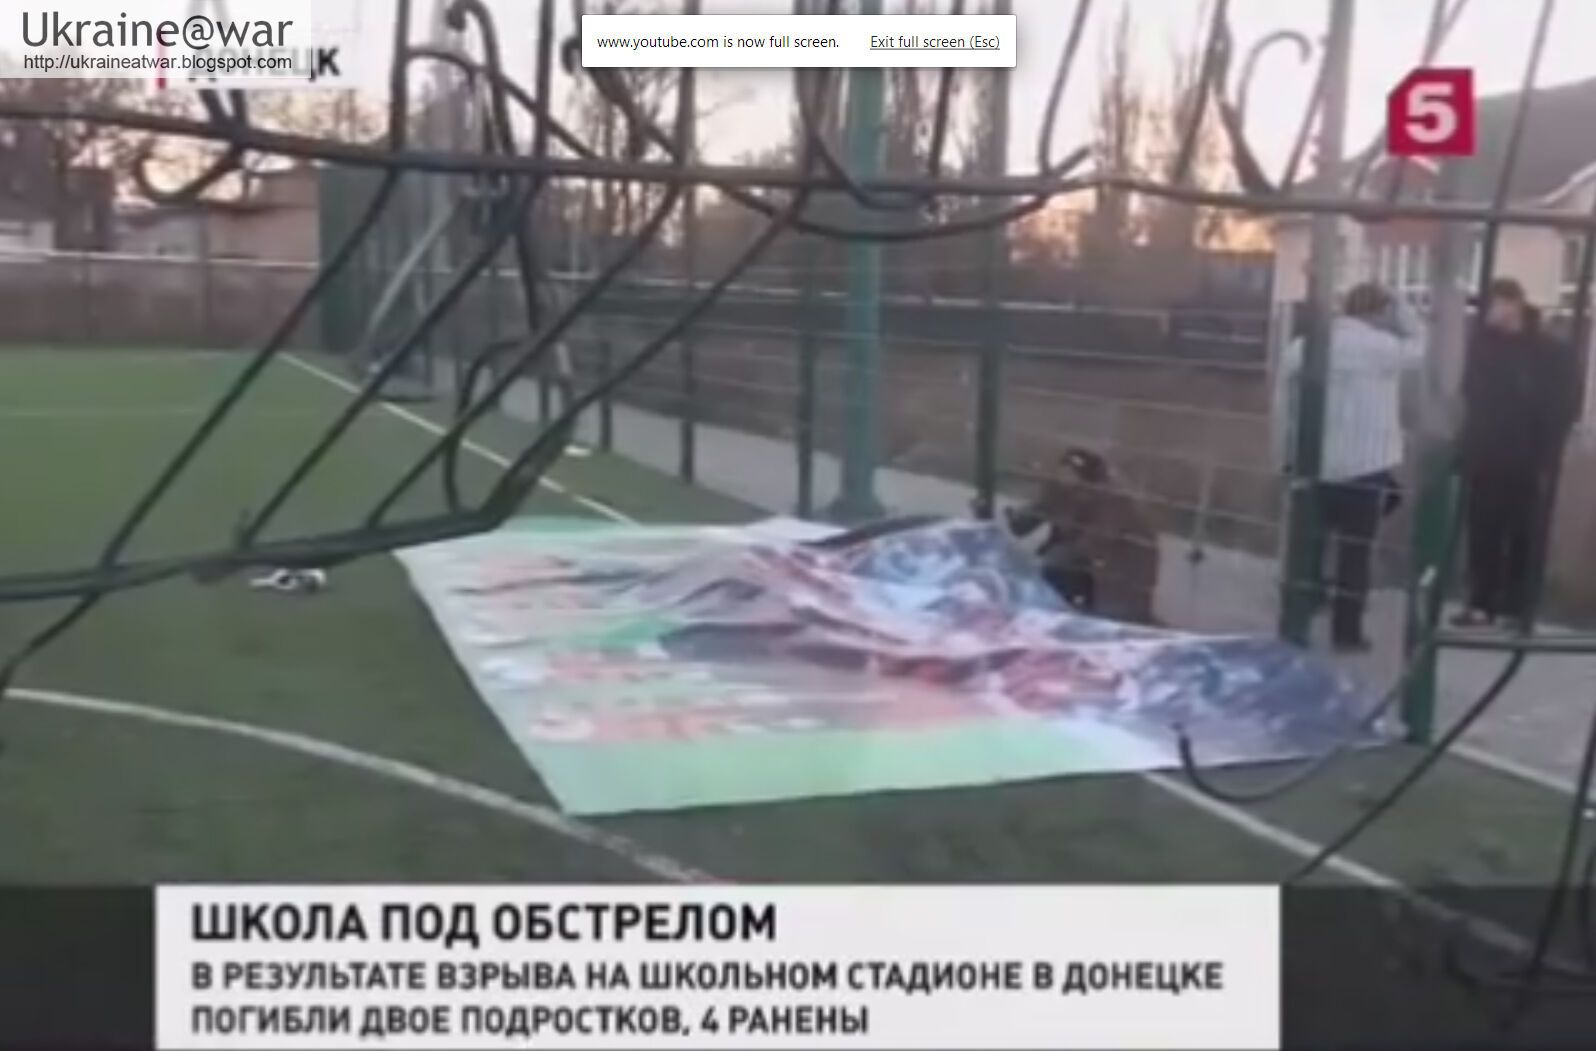 Снаряд, от которого погибли дети в Донецке, выпущен с контролируемой террористами территории - МИД